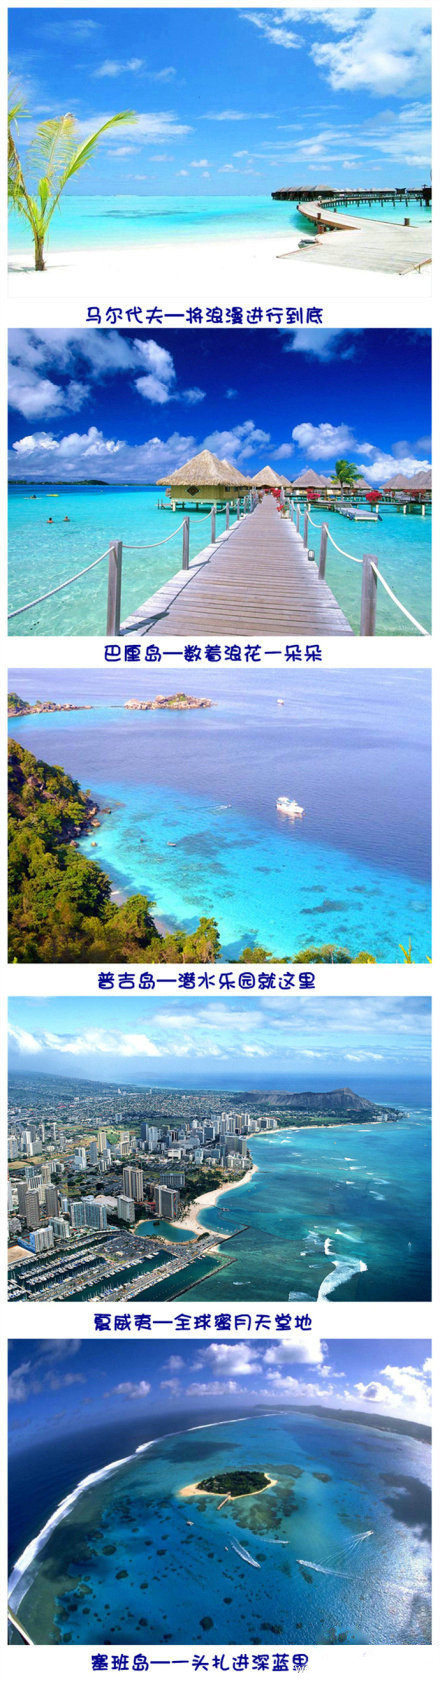 【全球最美的5大海岛】马尔代夫,巴厘岛,普吉岛,夏威夷,塞班岛.